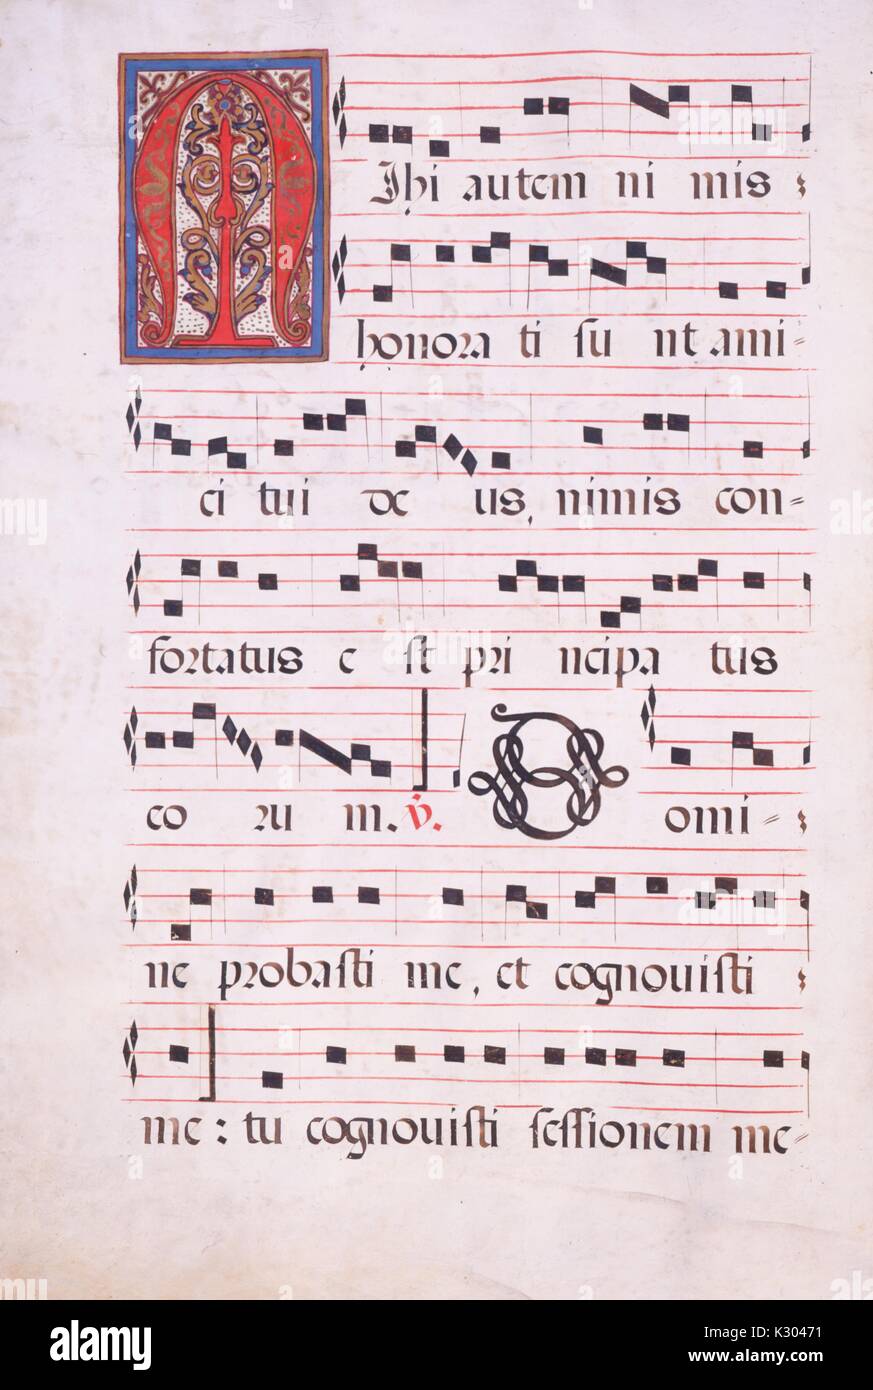 Manuscrit lumineux affichant la page de musique en feuille, à partir d'un manuscrit latin compilées en Espagne au 18e siècle, 1715. Banque D'Images